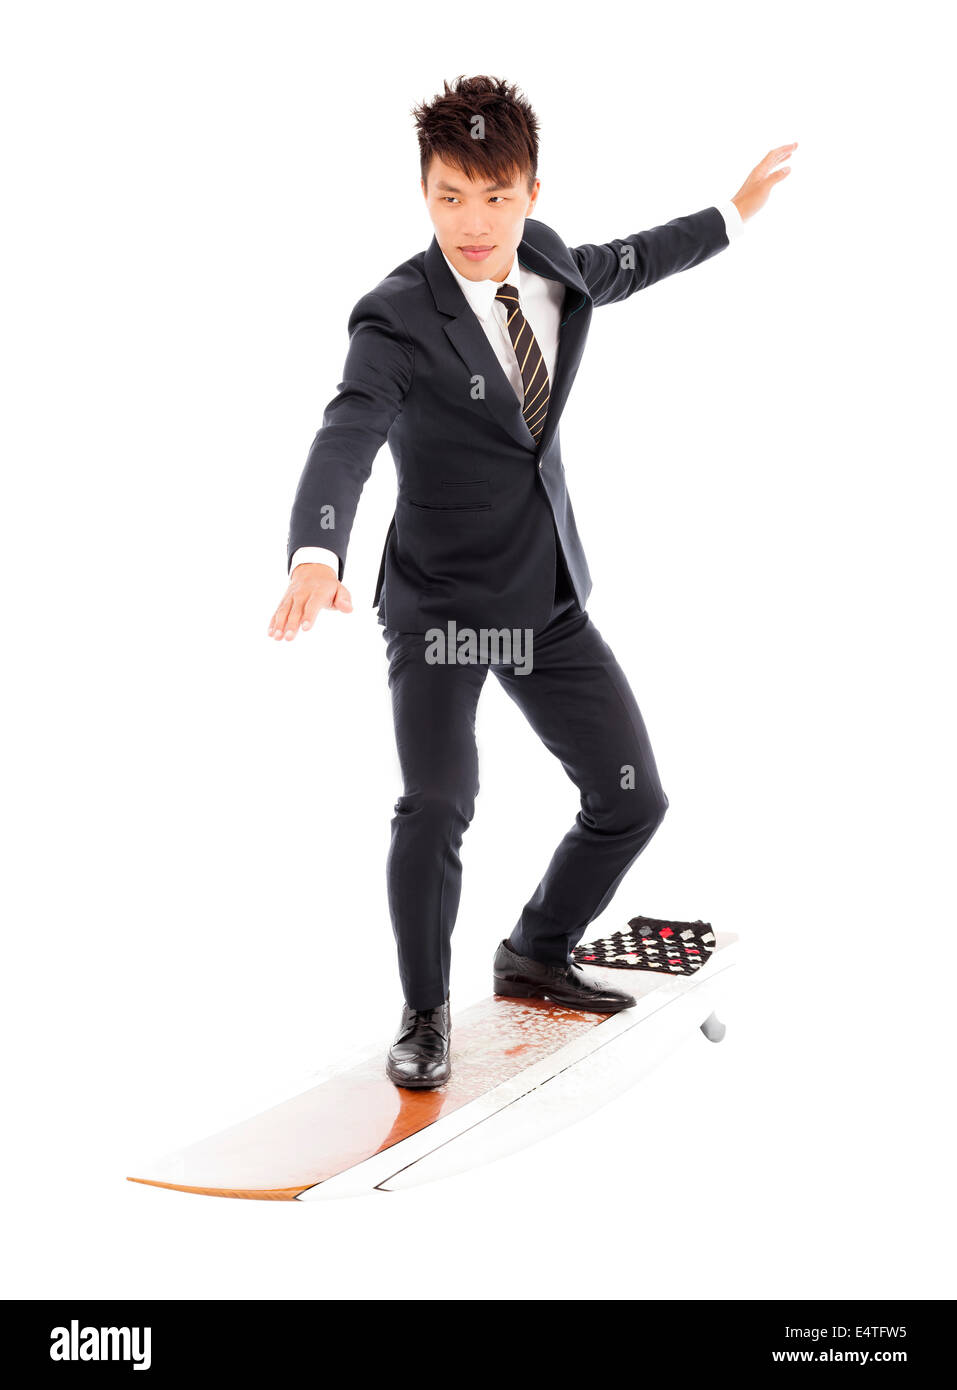 Geschäftsmann Praxis Surfen Pose mit Anzug Stockfoto